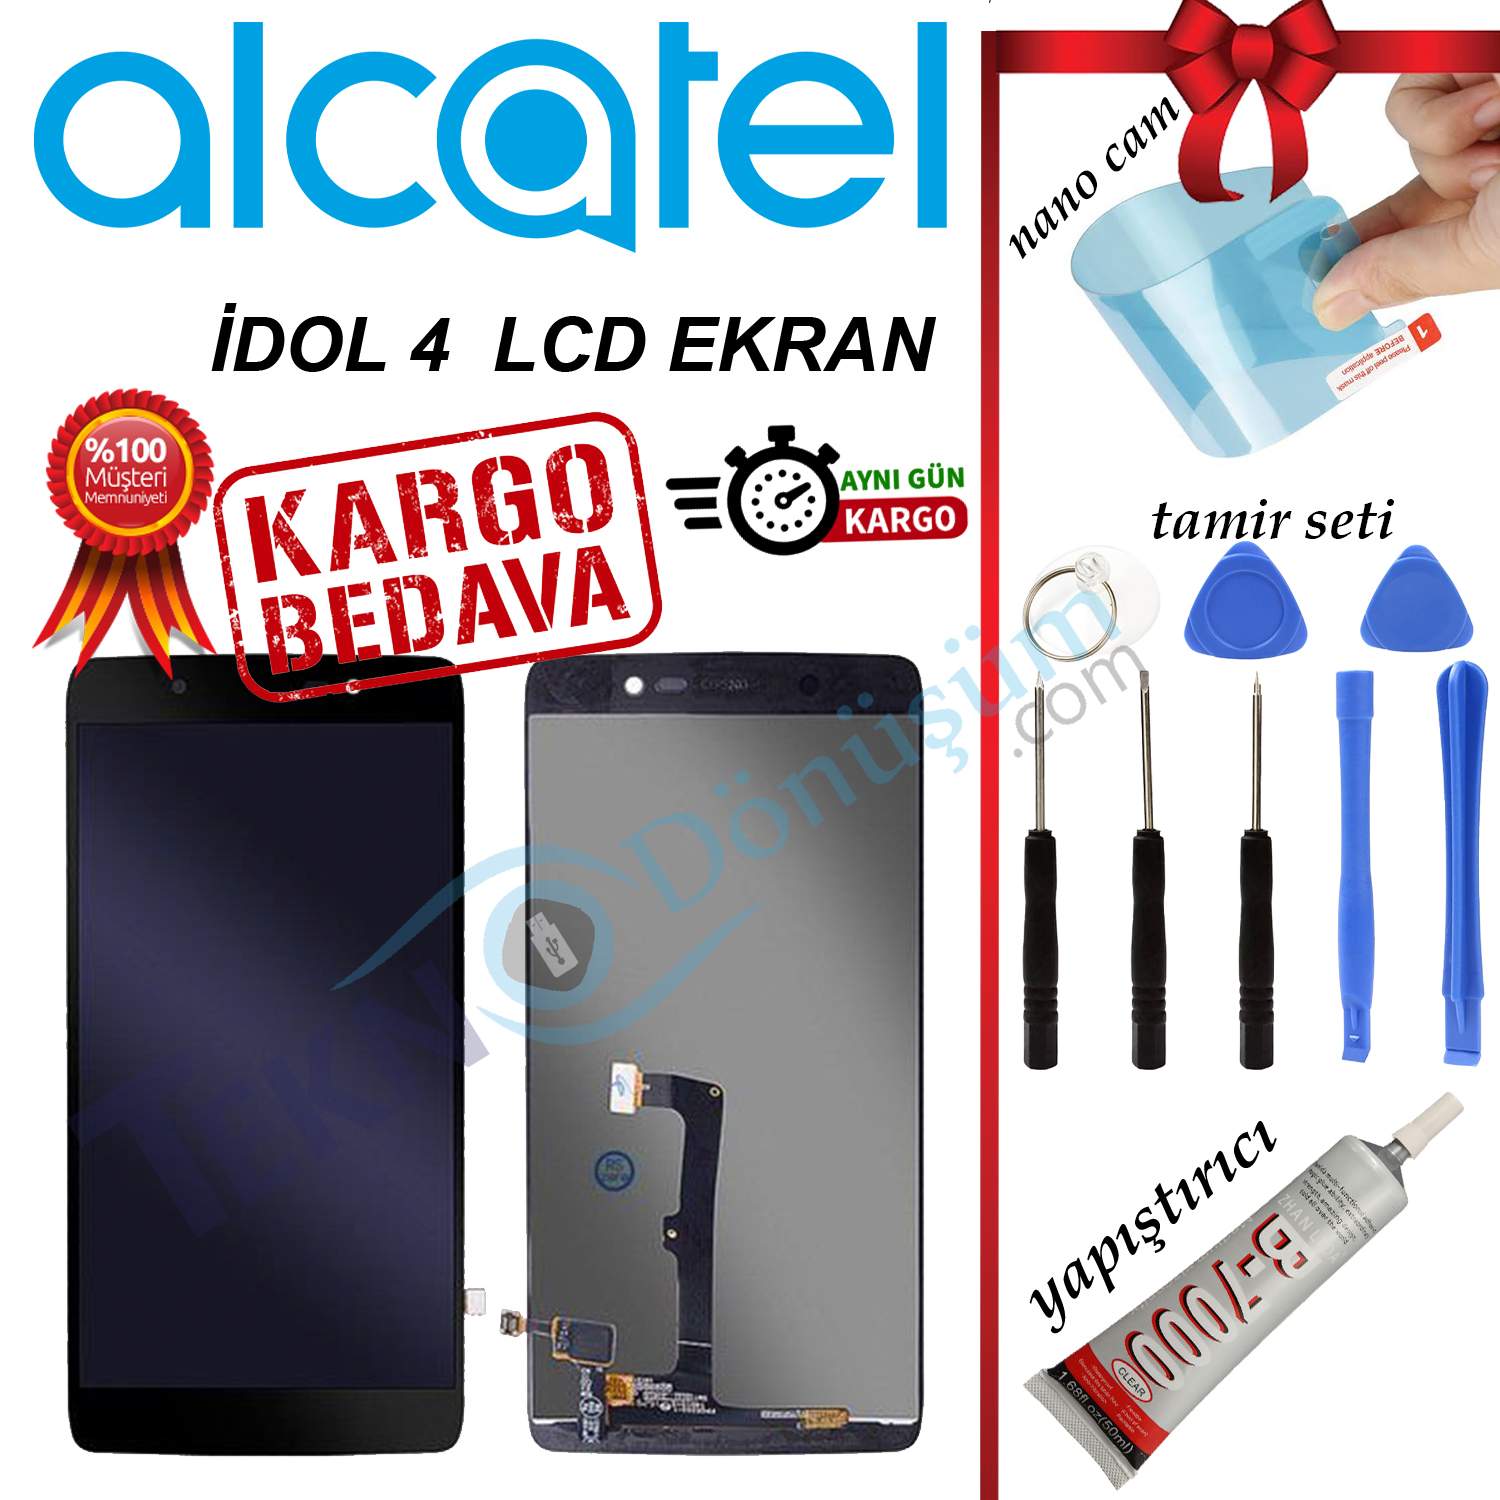 ALCATEL İDOL 4 ORJİNAL LCD DOKUNMATİK EKRAN